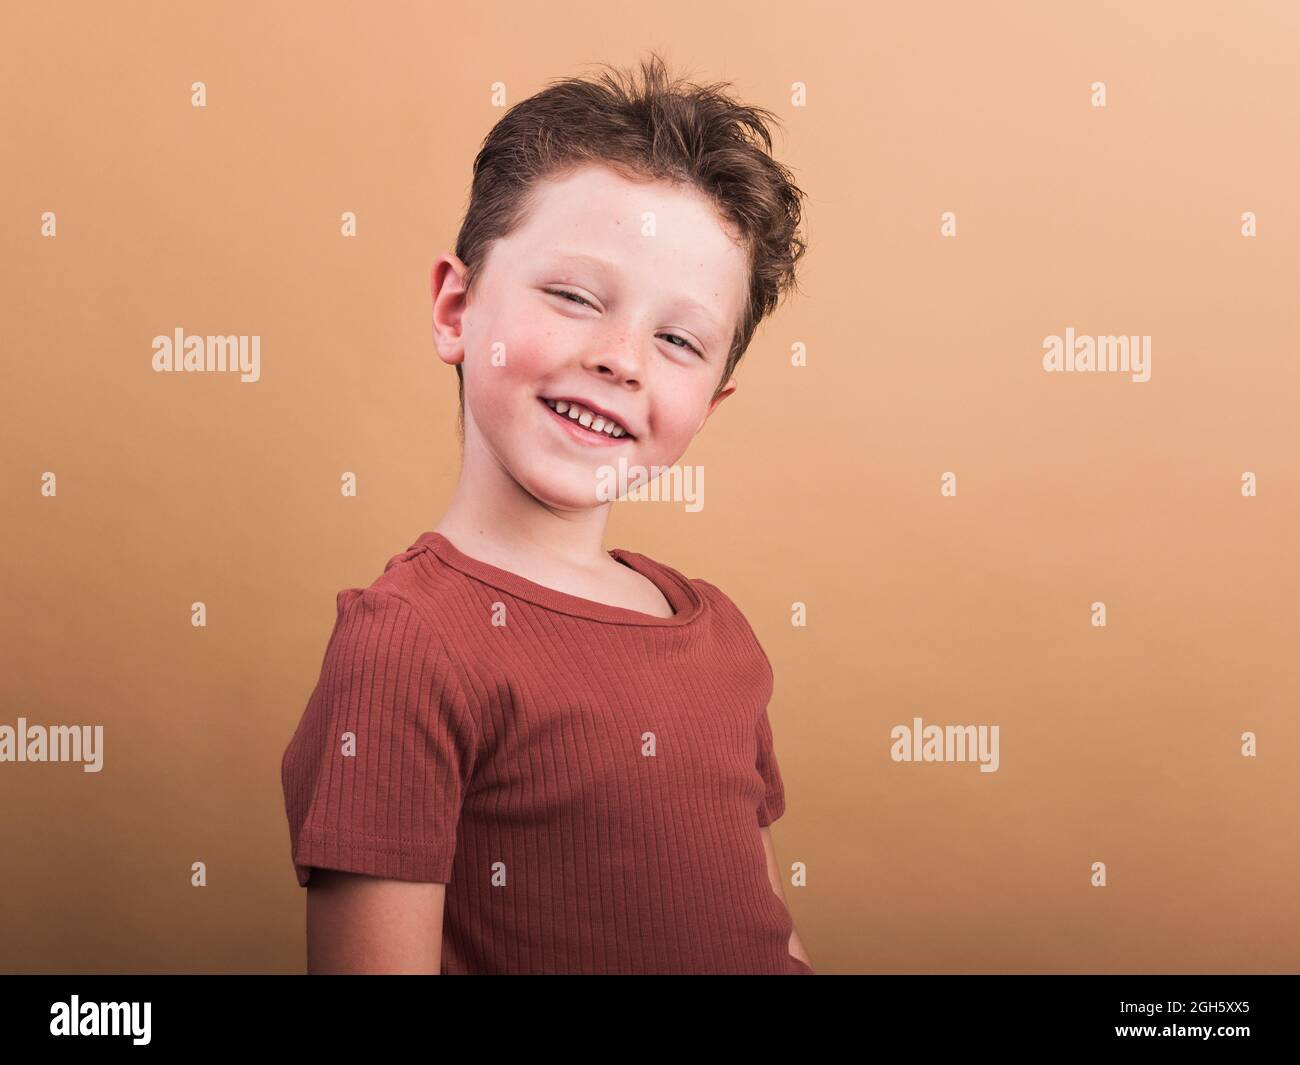 Un enfant satisfait dans des vêtements décontractés avec des cheveux bruns regardant l'appareil photo avec un sourire crasseux et une tête inclinée Banque D'Images